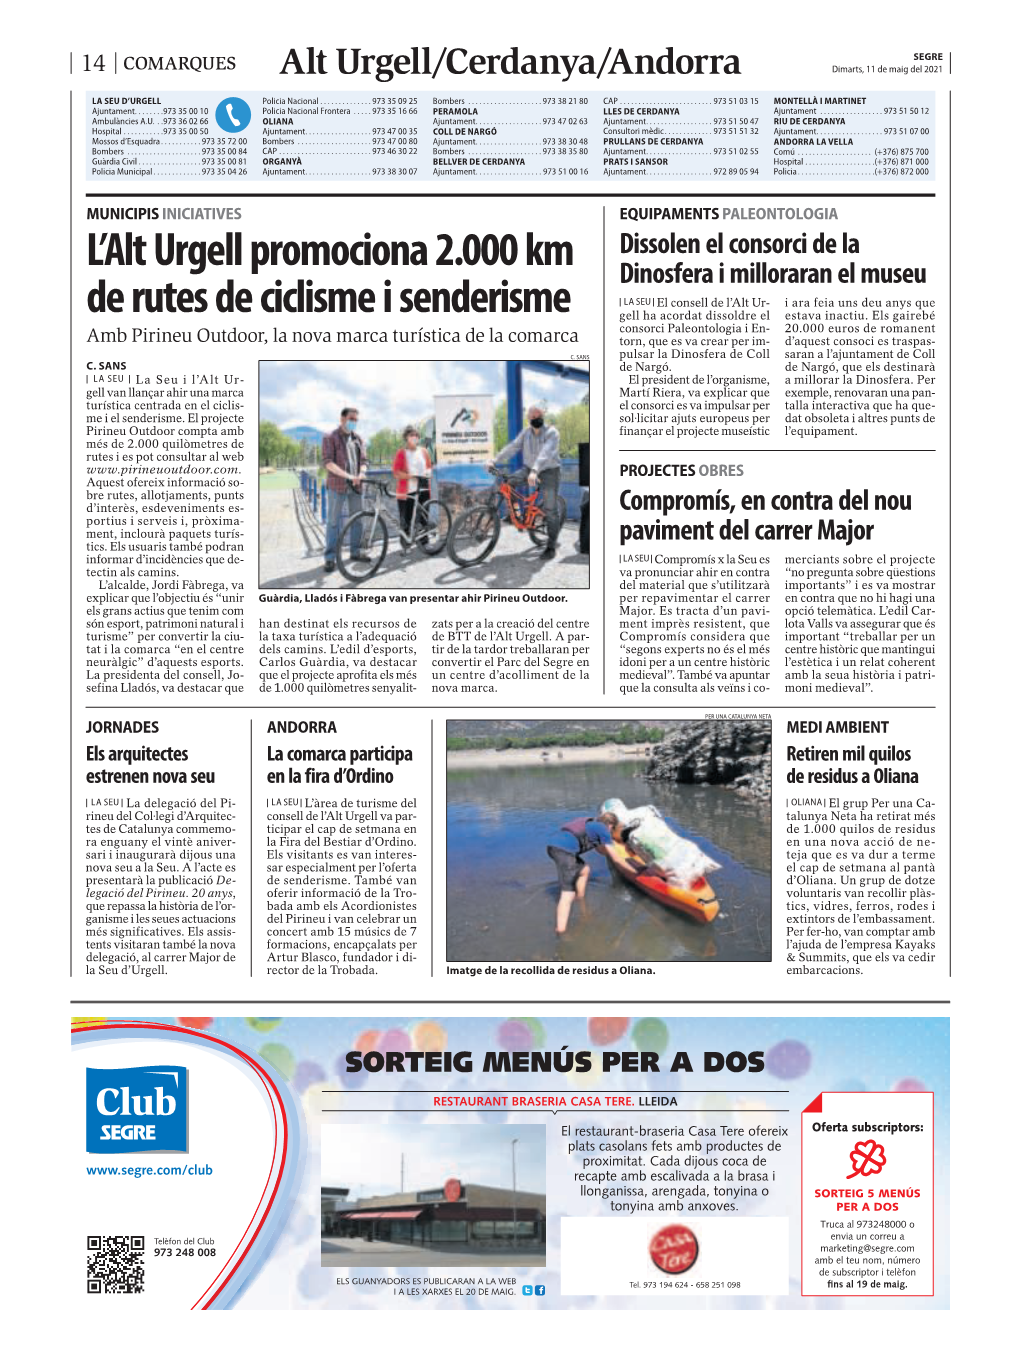 L'alt Urgell Promociona 2.000 Km De Rutes De Ciclisme I Senderisme